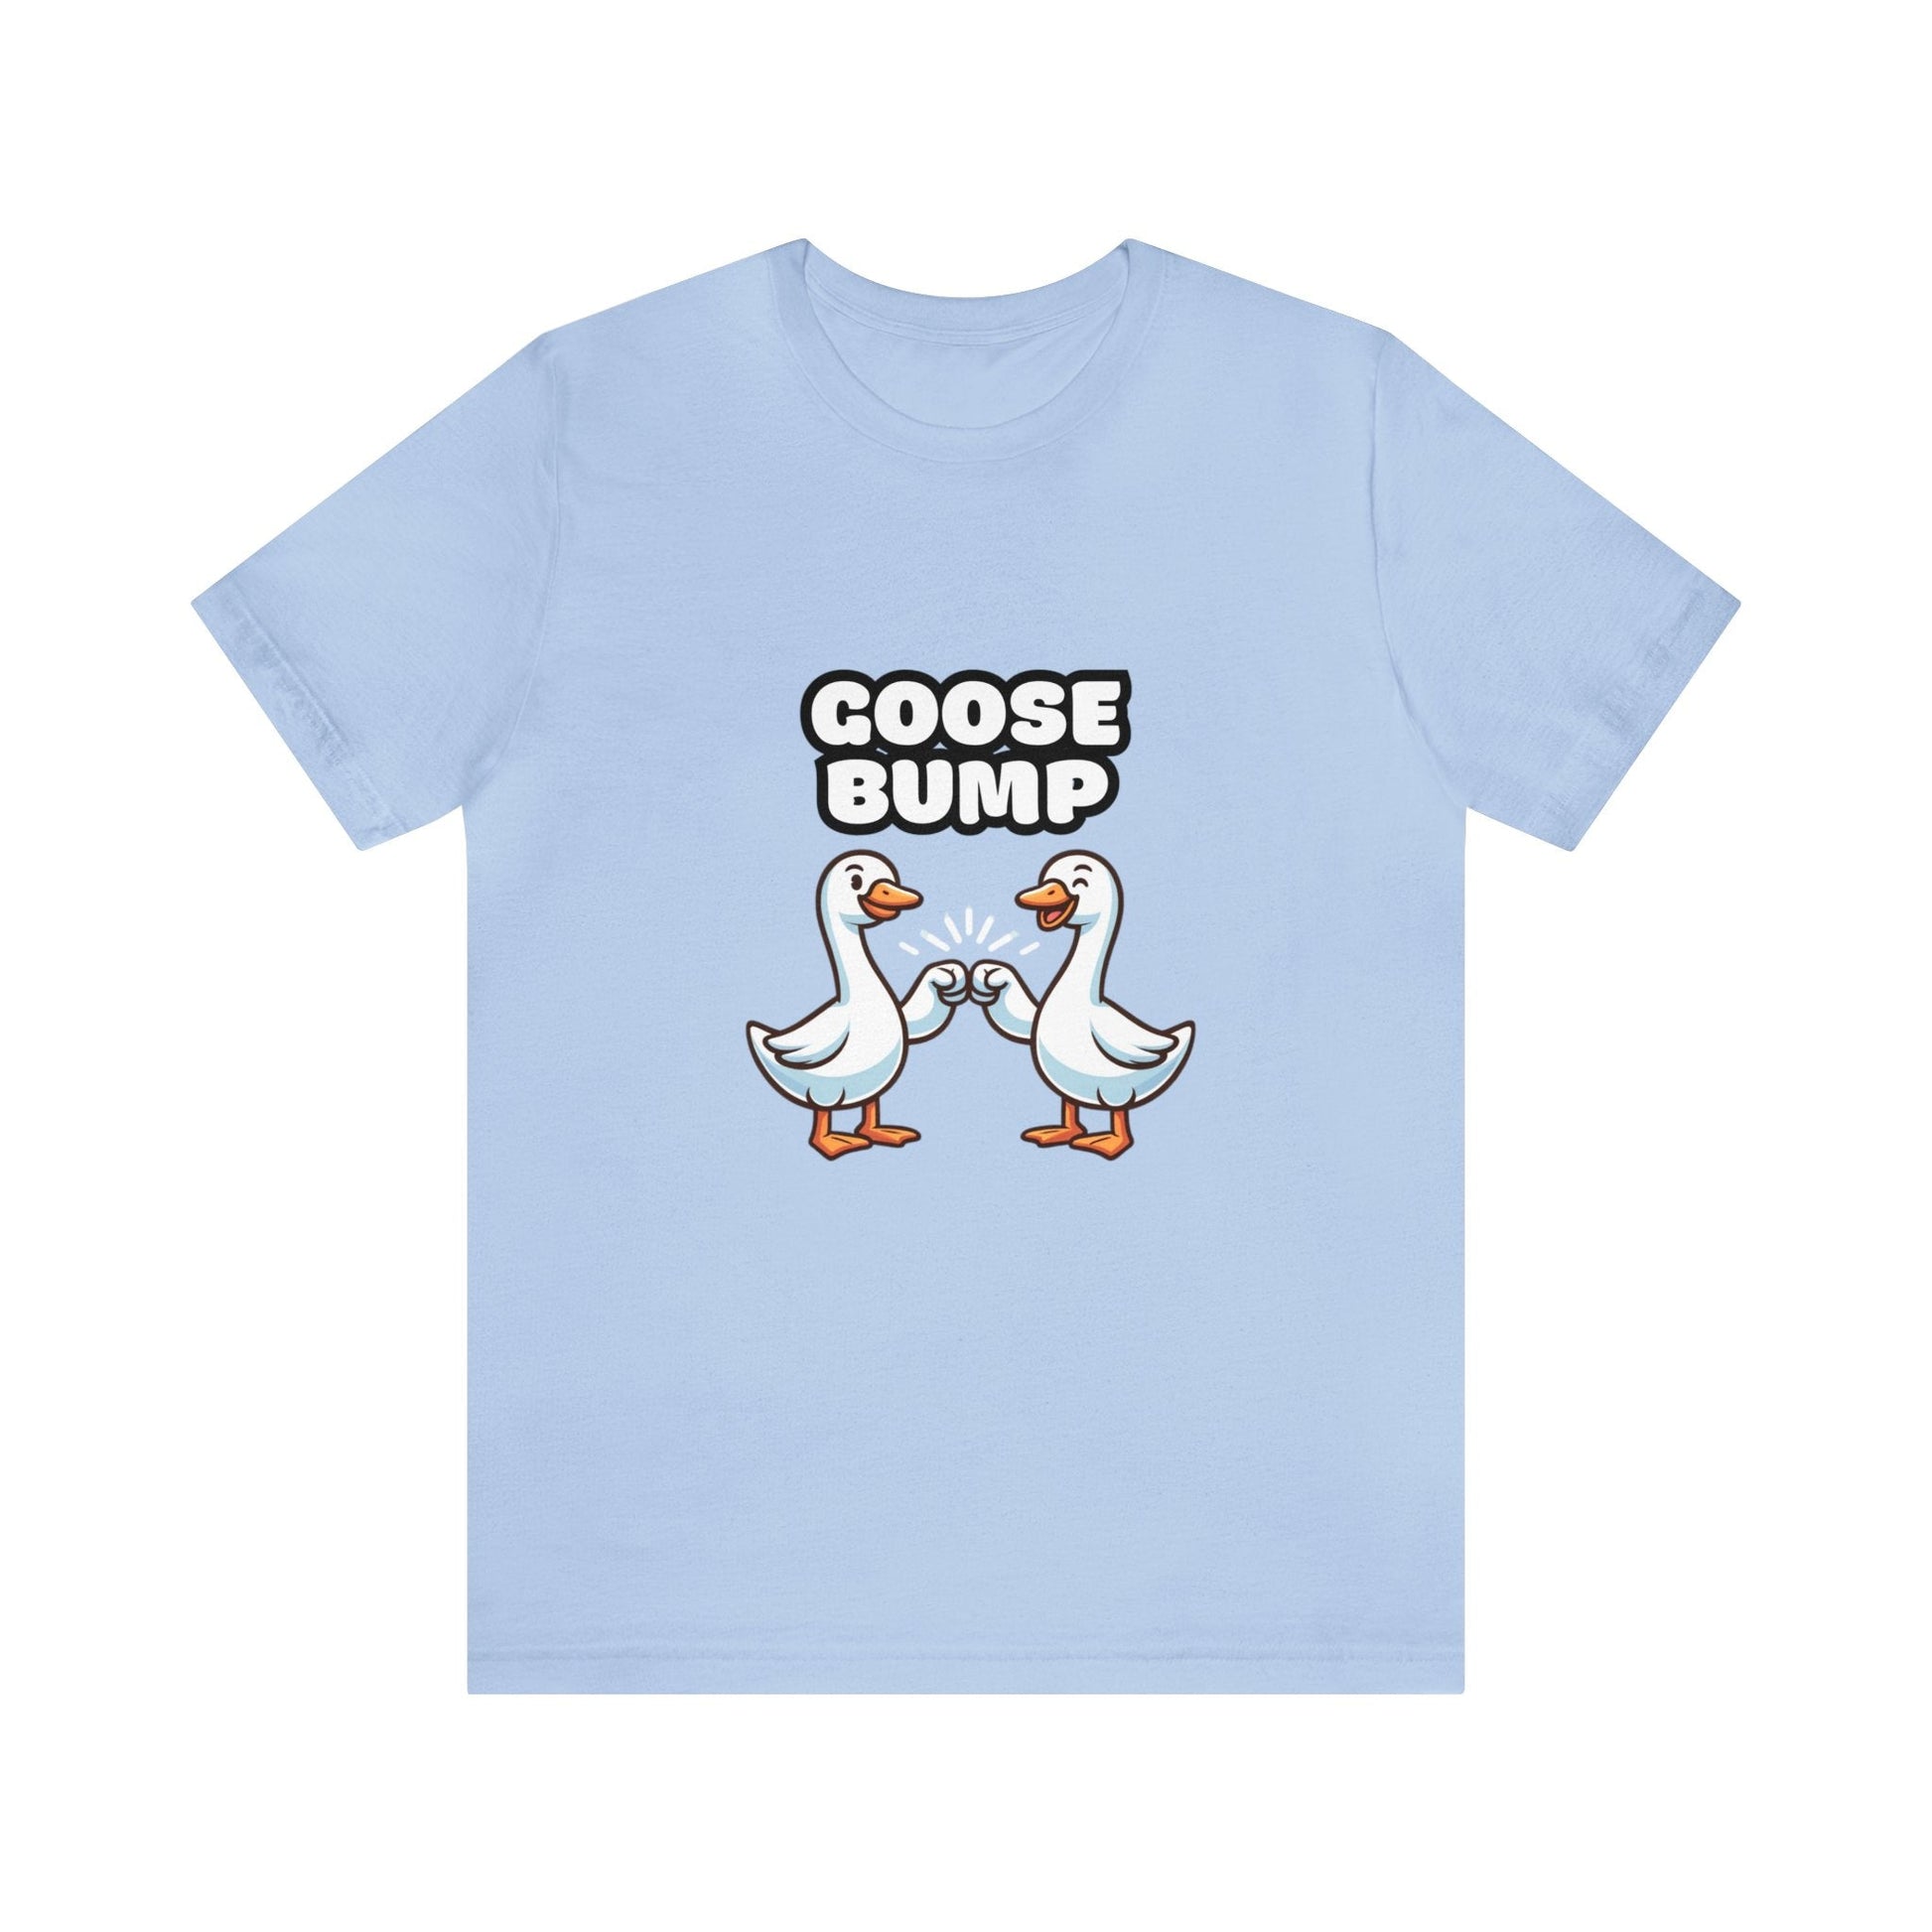 US - Goose Bump - Goose T-shirt Baby Blue / S